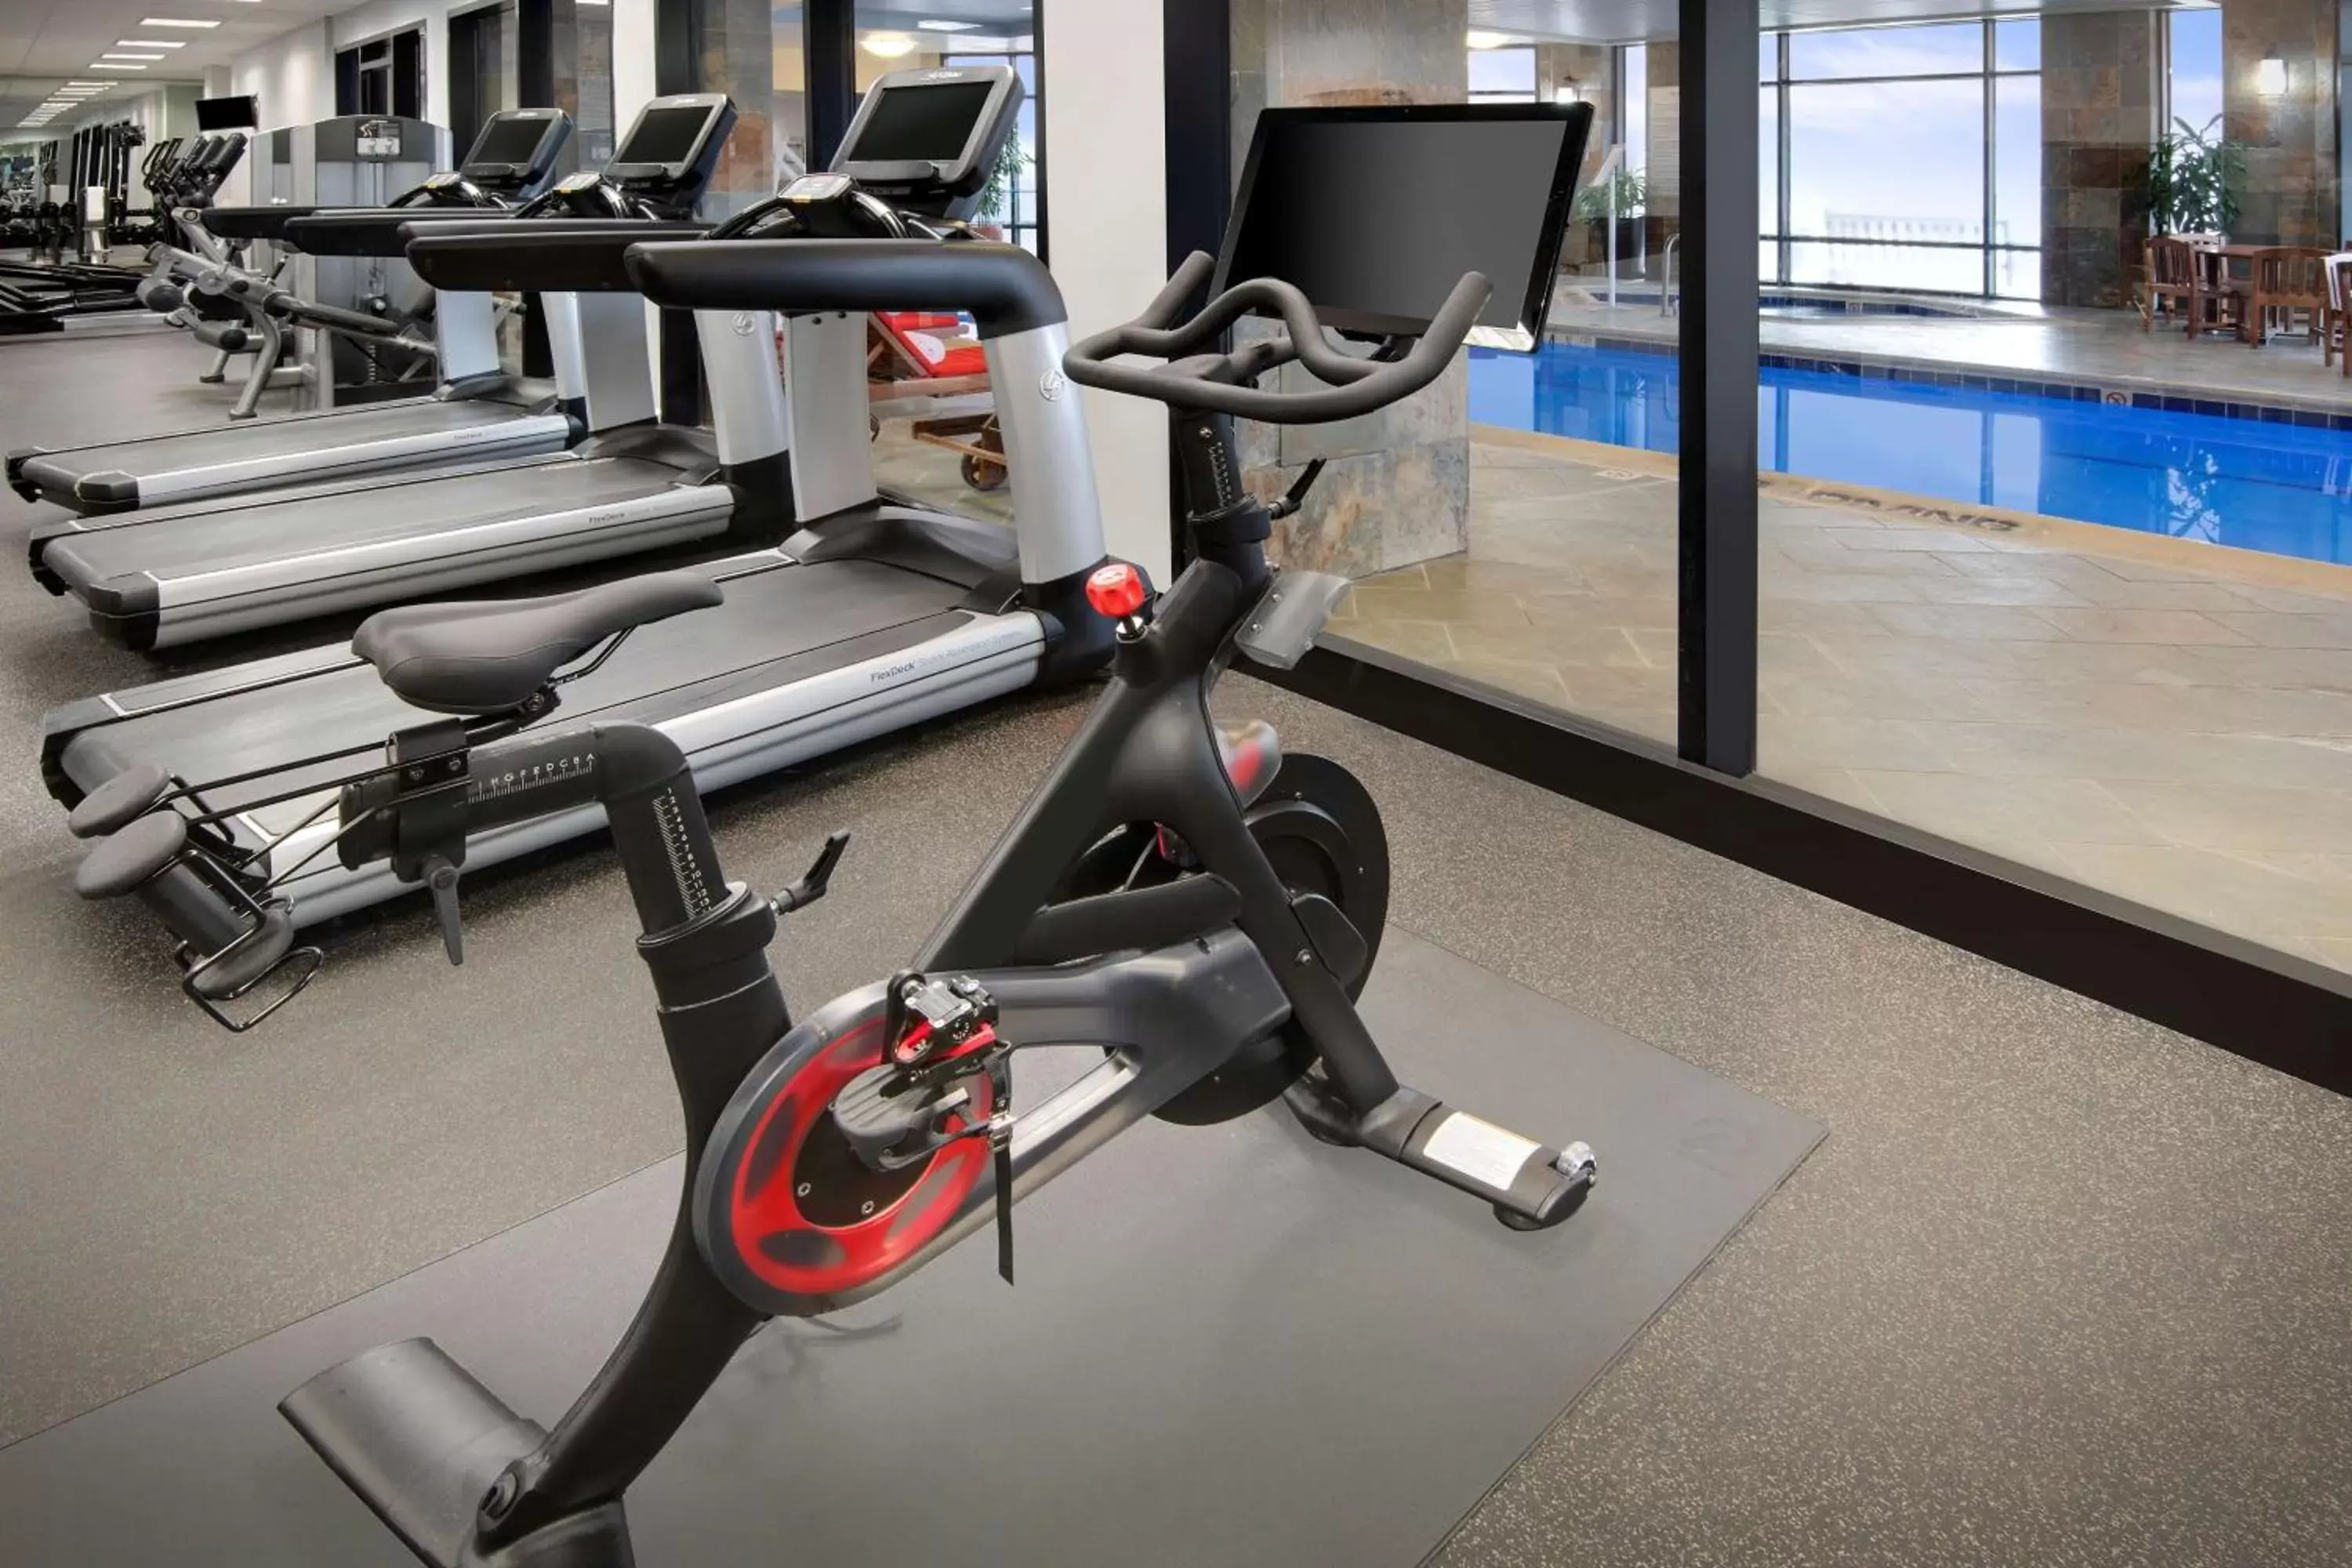 Fitness centre/facilities, Fitness Center/Facilities in Hyatt Regency Dulles